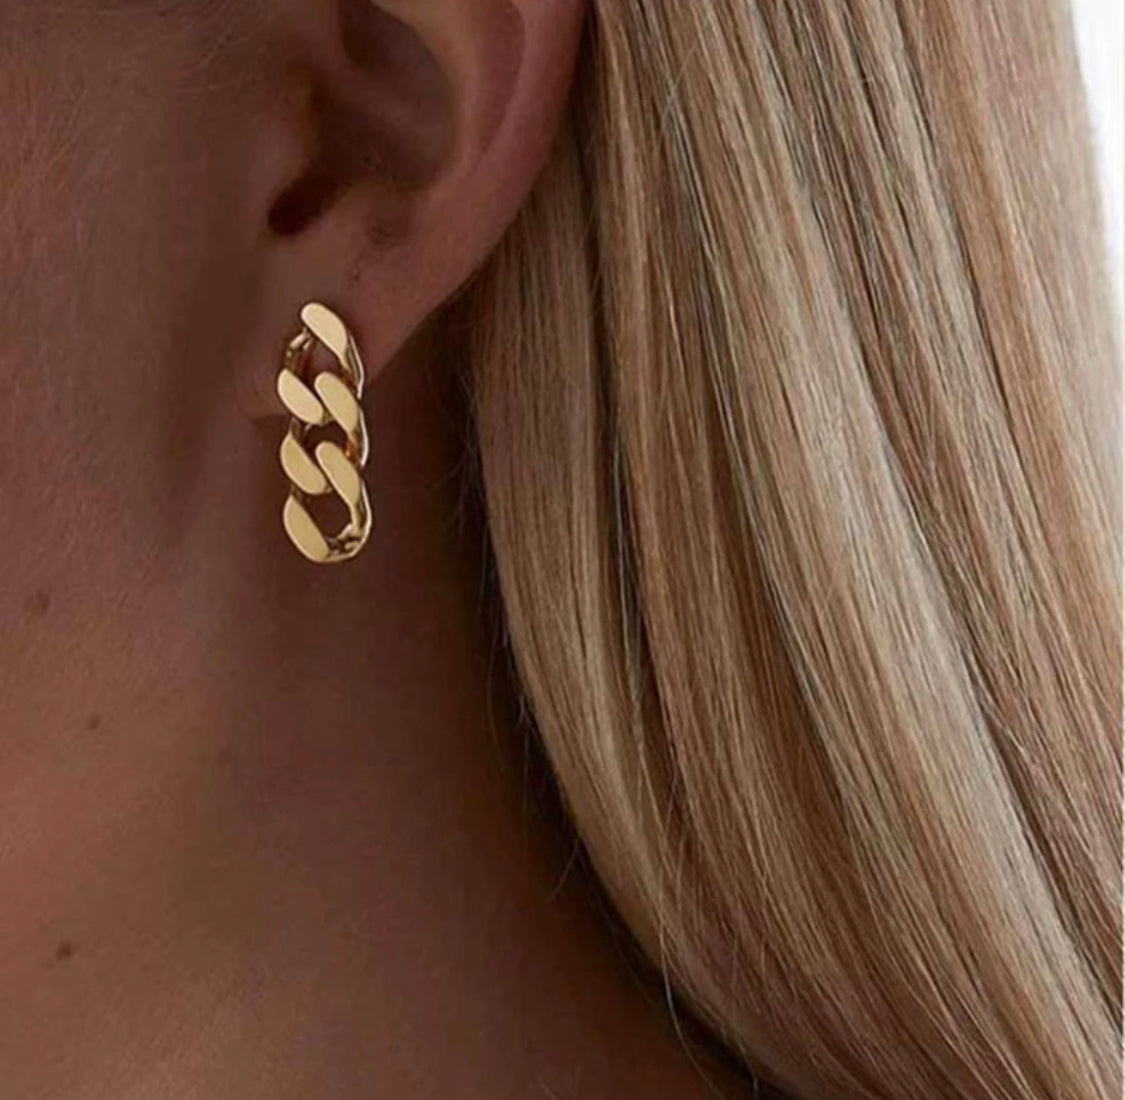 minimalist link chain earrings, chains earrings,  link chain earrings, 18k gold, 14k gold, jewelry